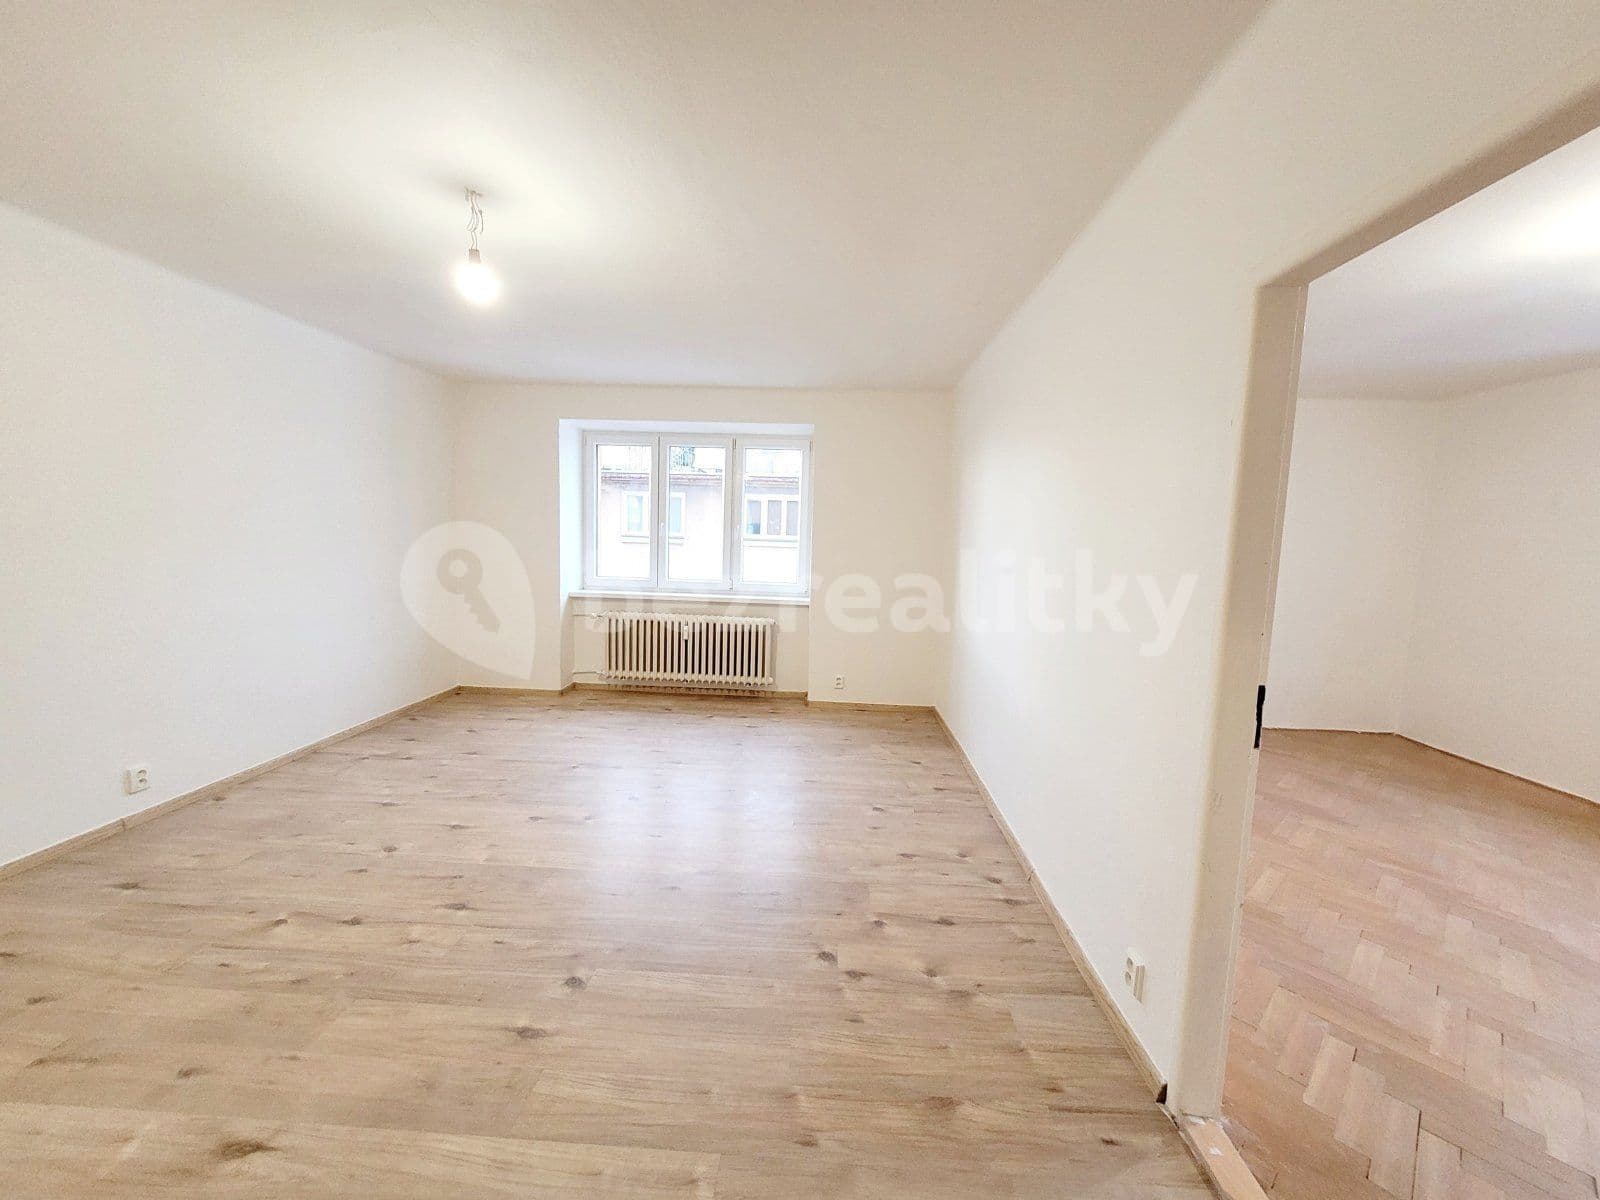 3 bedroom flat to rent, 86 m², nám. T. G. Masaryka, Havířov, Moravskoslezský Region